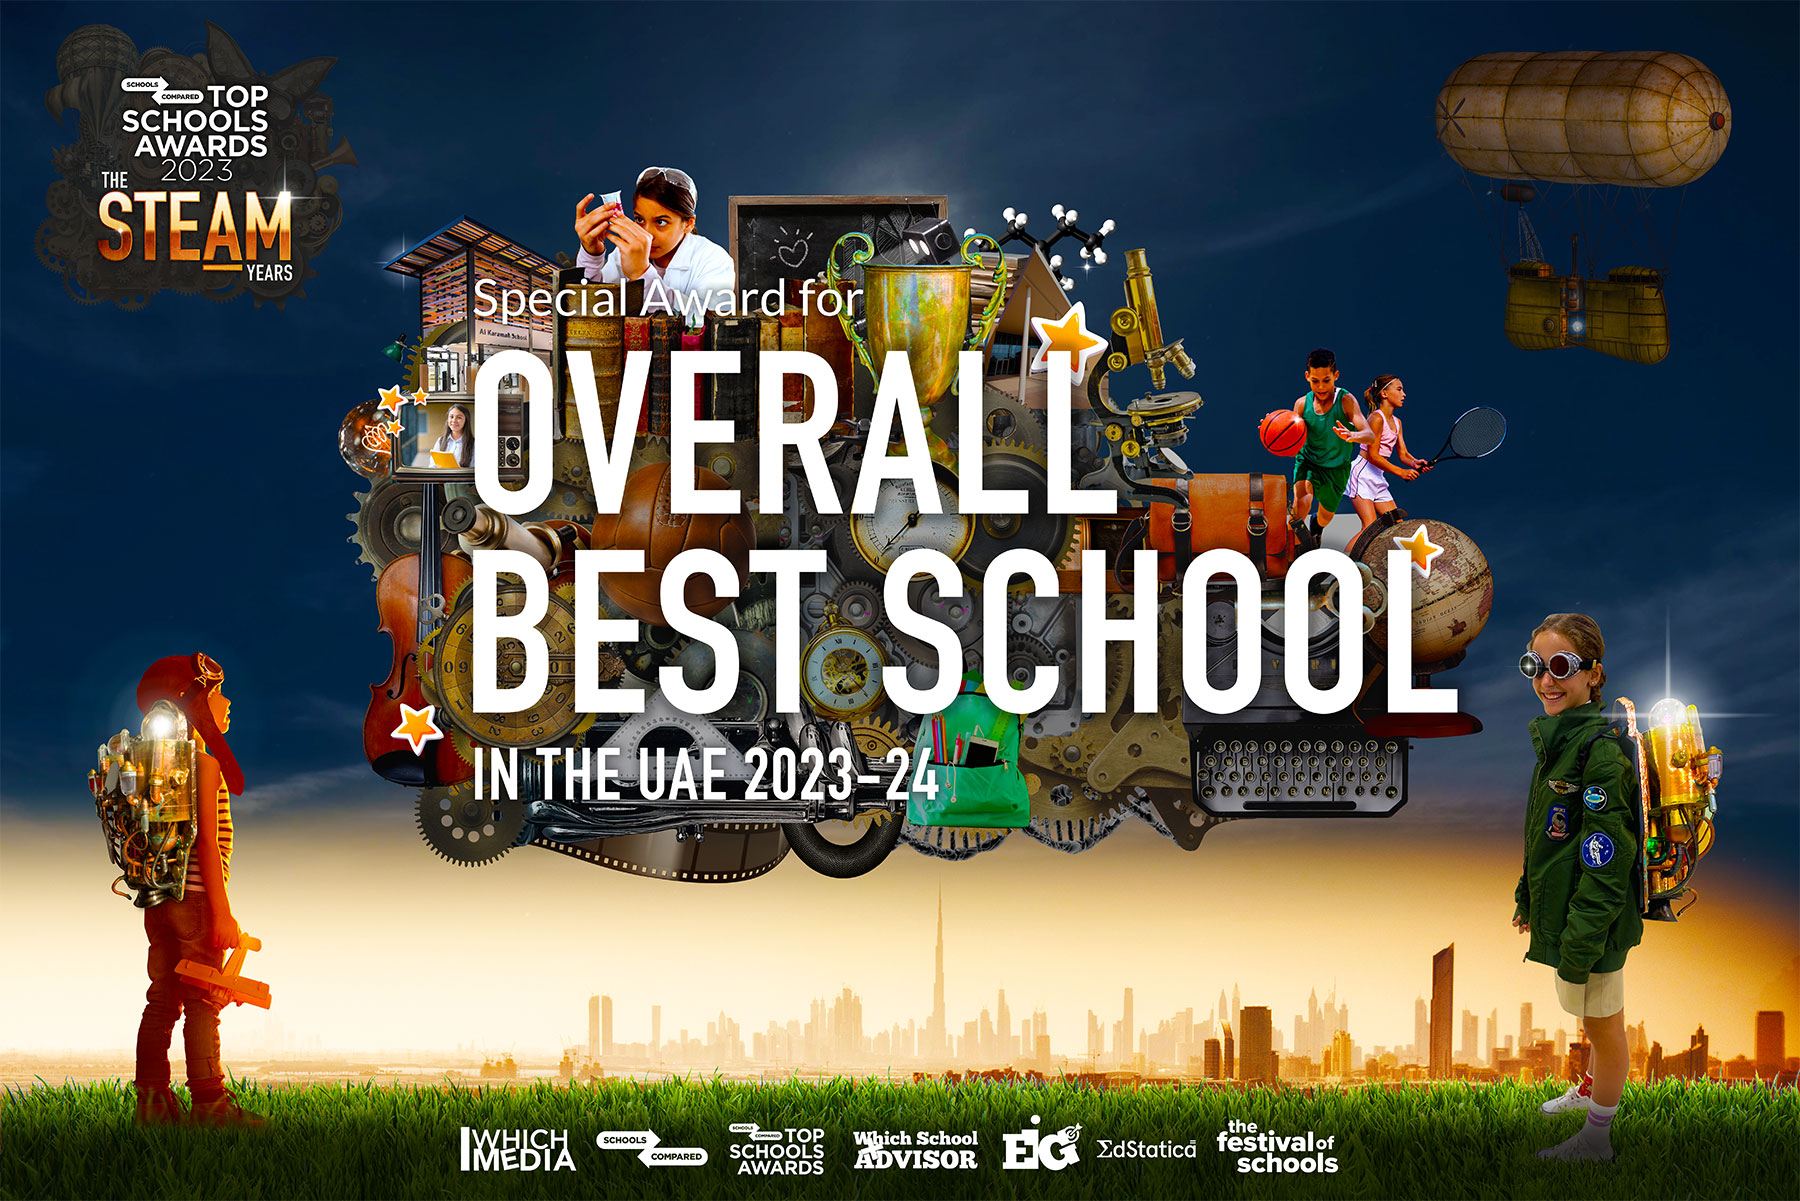 Mejor escuela en los EAU 2023 - 2024. Premios Top Schools 2023 - 2024